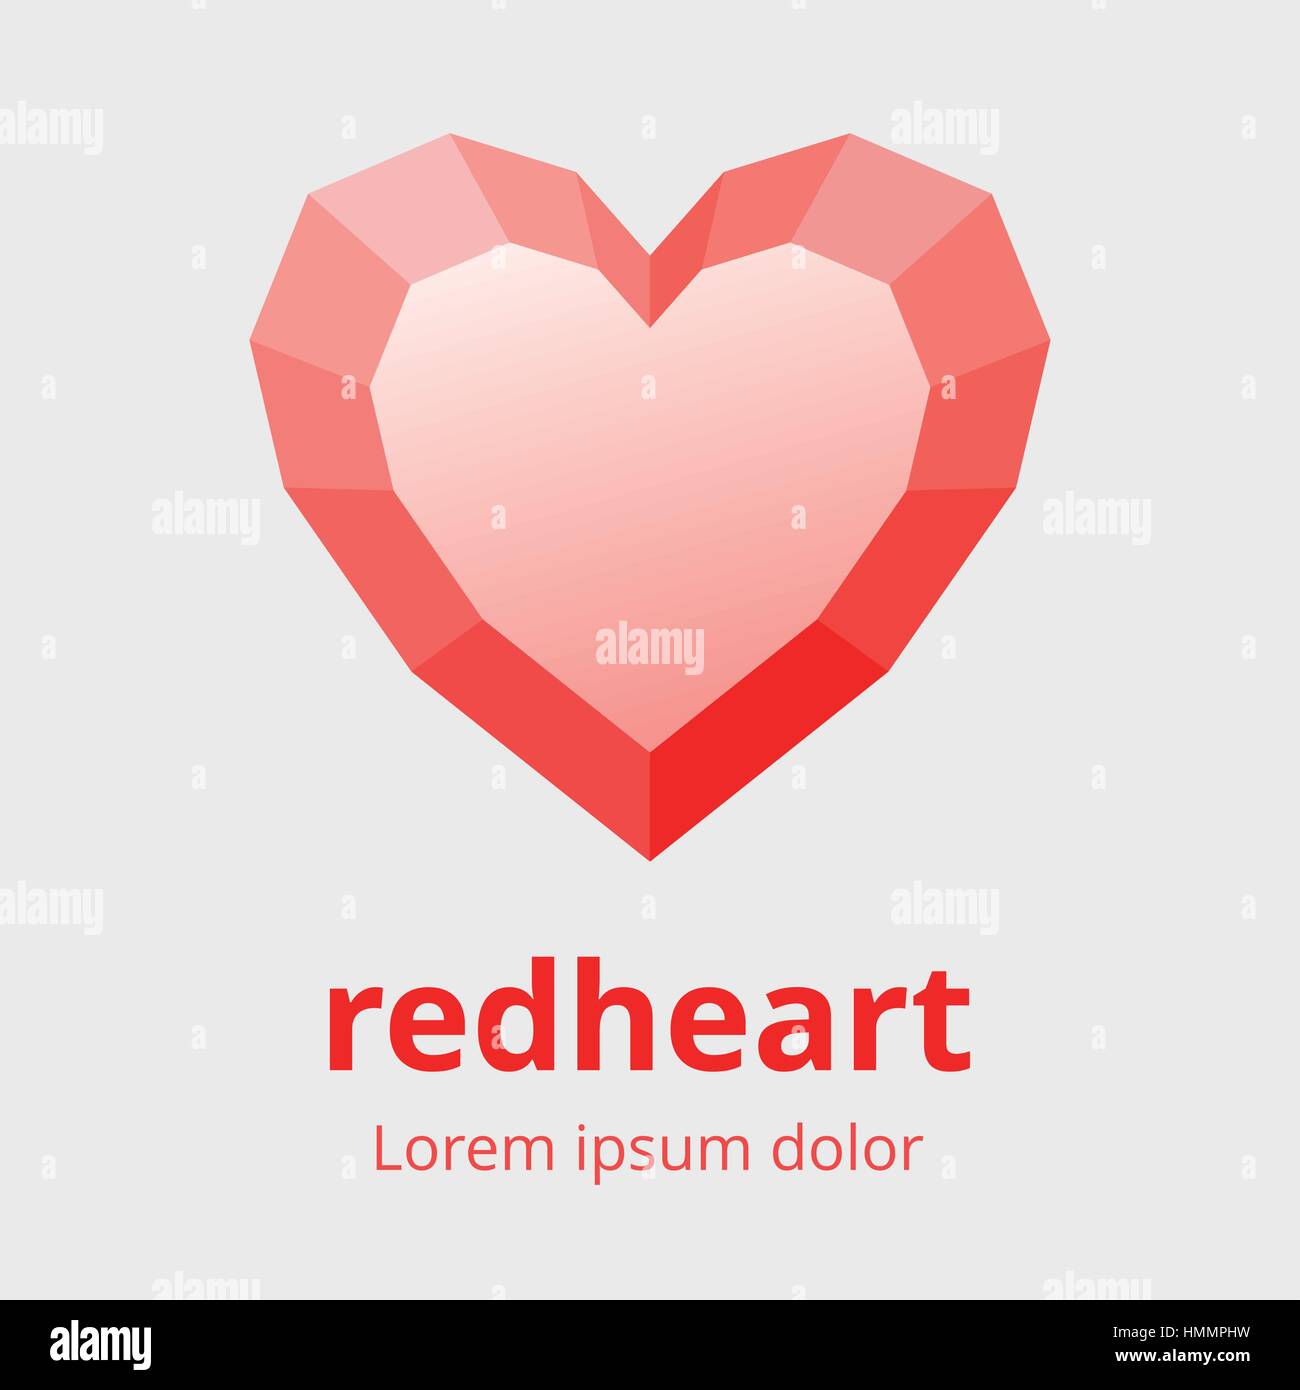 Facettierte Herzsymbol. Polygonale facettenreiche Herz-Symbol. Rotes Herz mit Flächen-Design-Element. Vektor-Illustration in EPS8. Stock Vektor